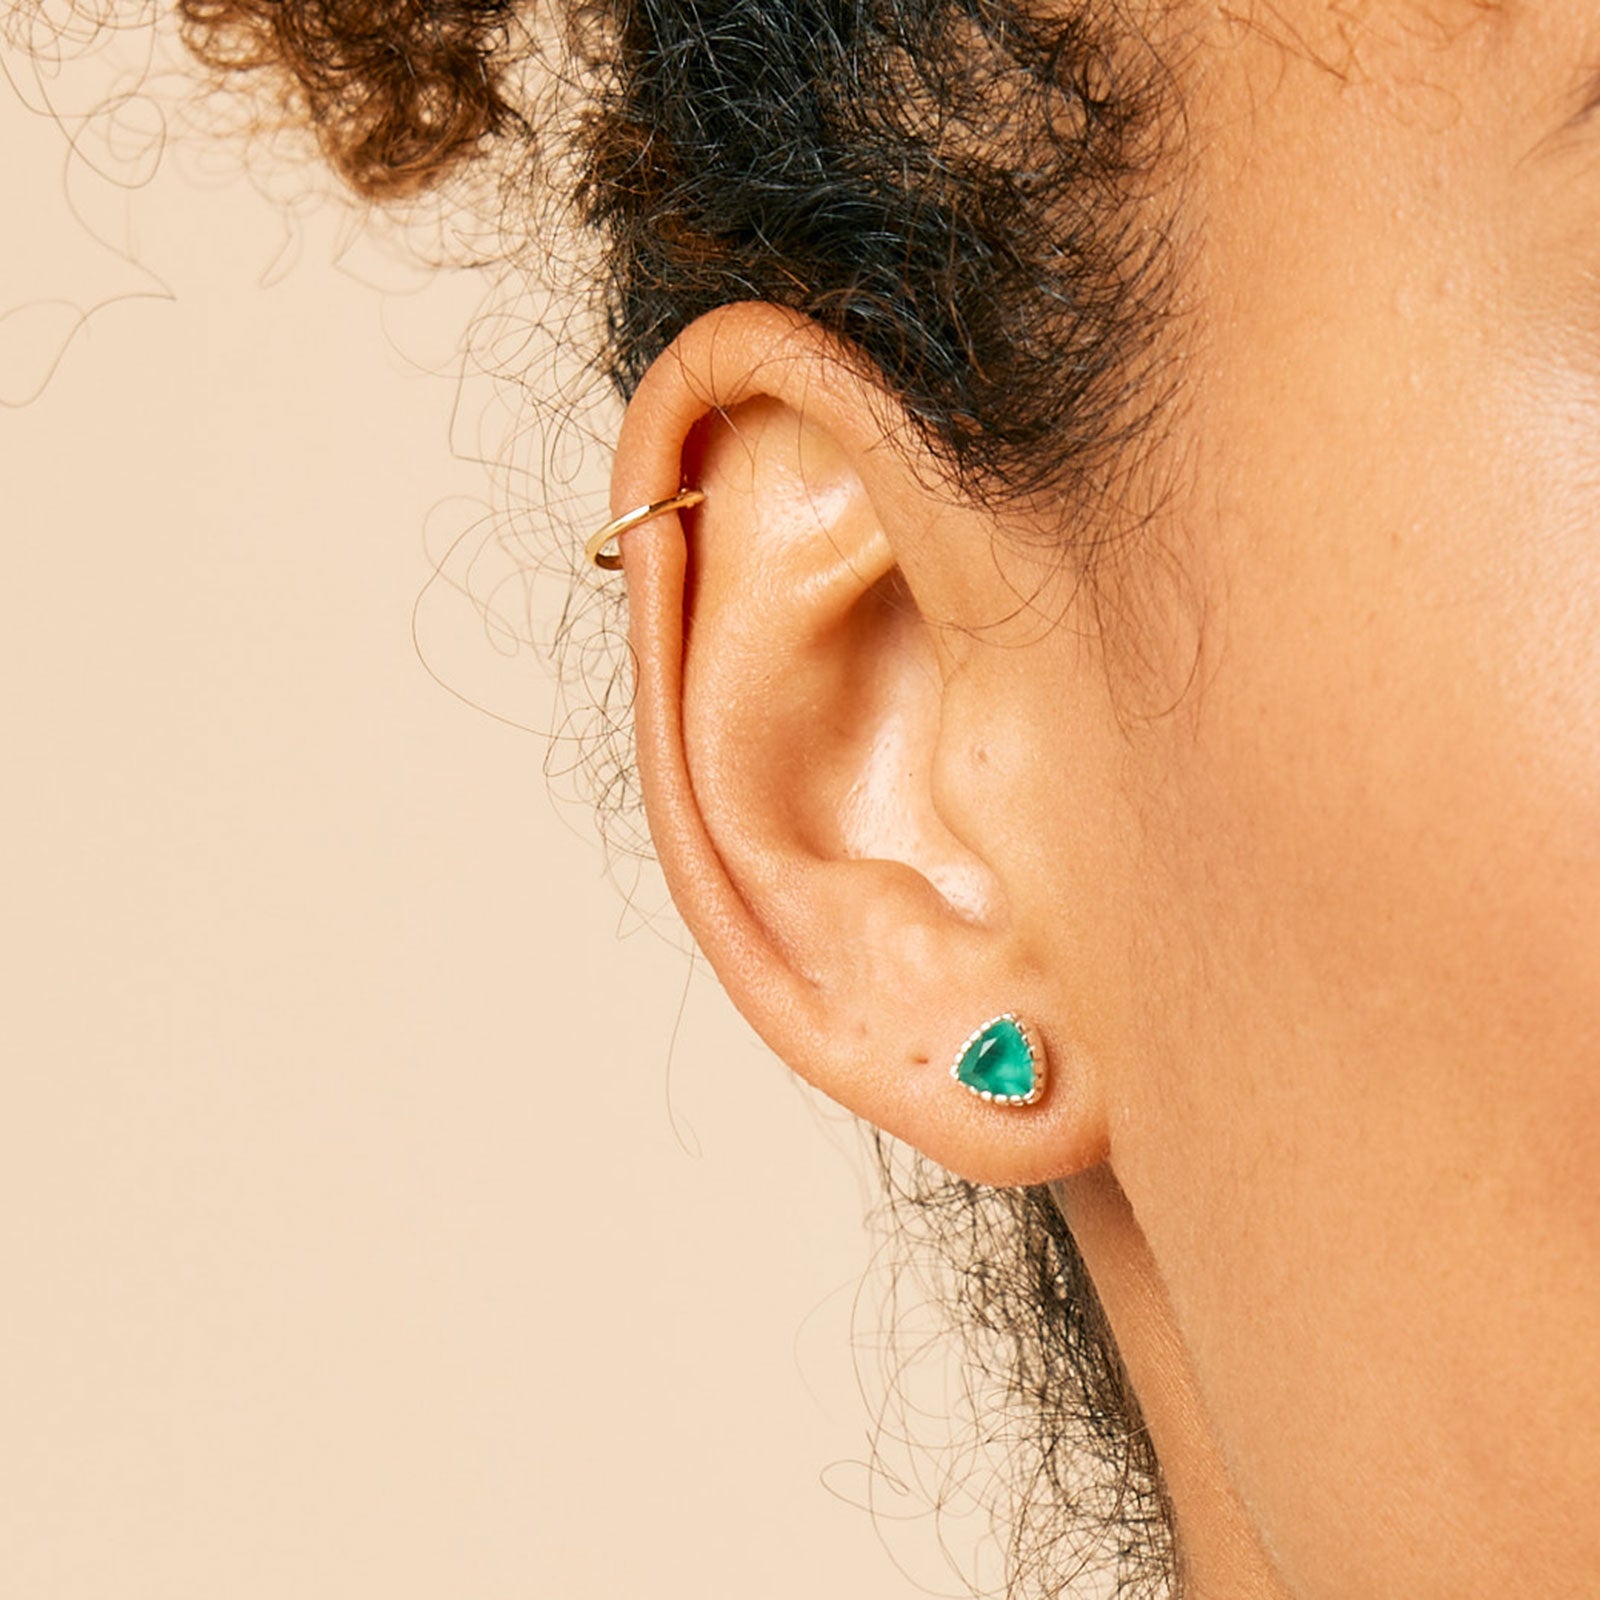 Green Onyx Stud Earrings